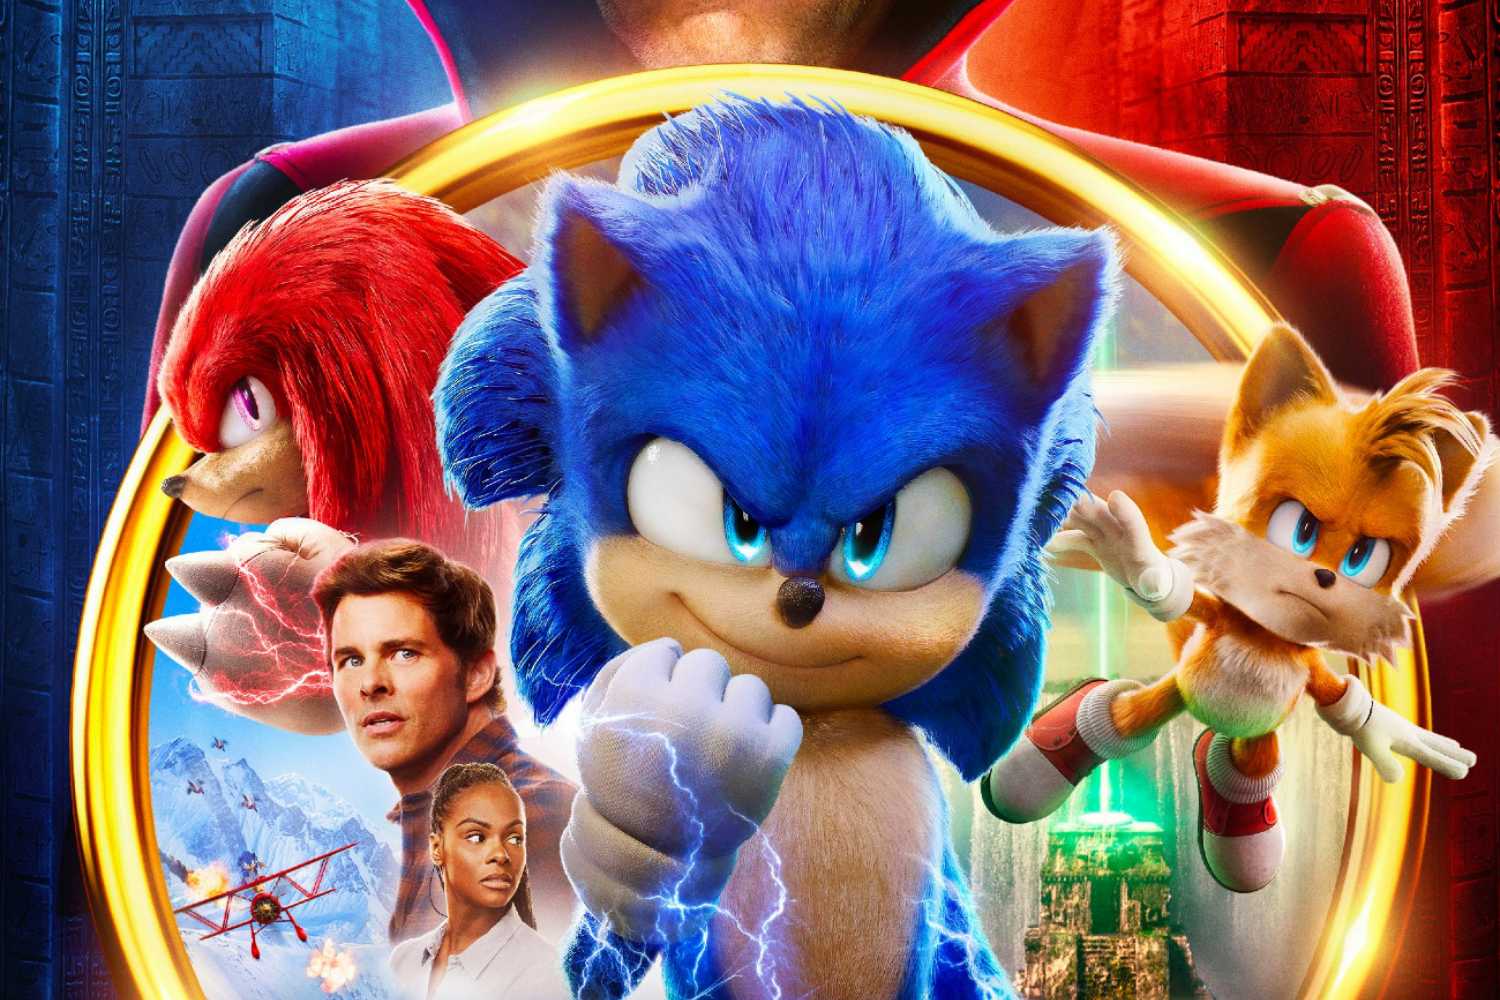 Sonic 2: O Filme” bate recorde nas bilheterias dos EUA - Pipoca Moderna